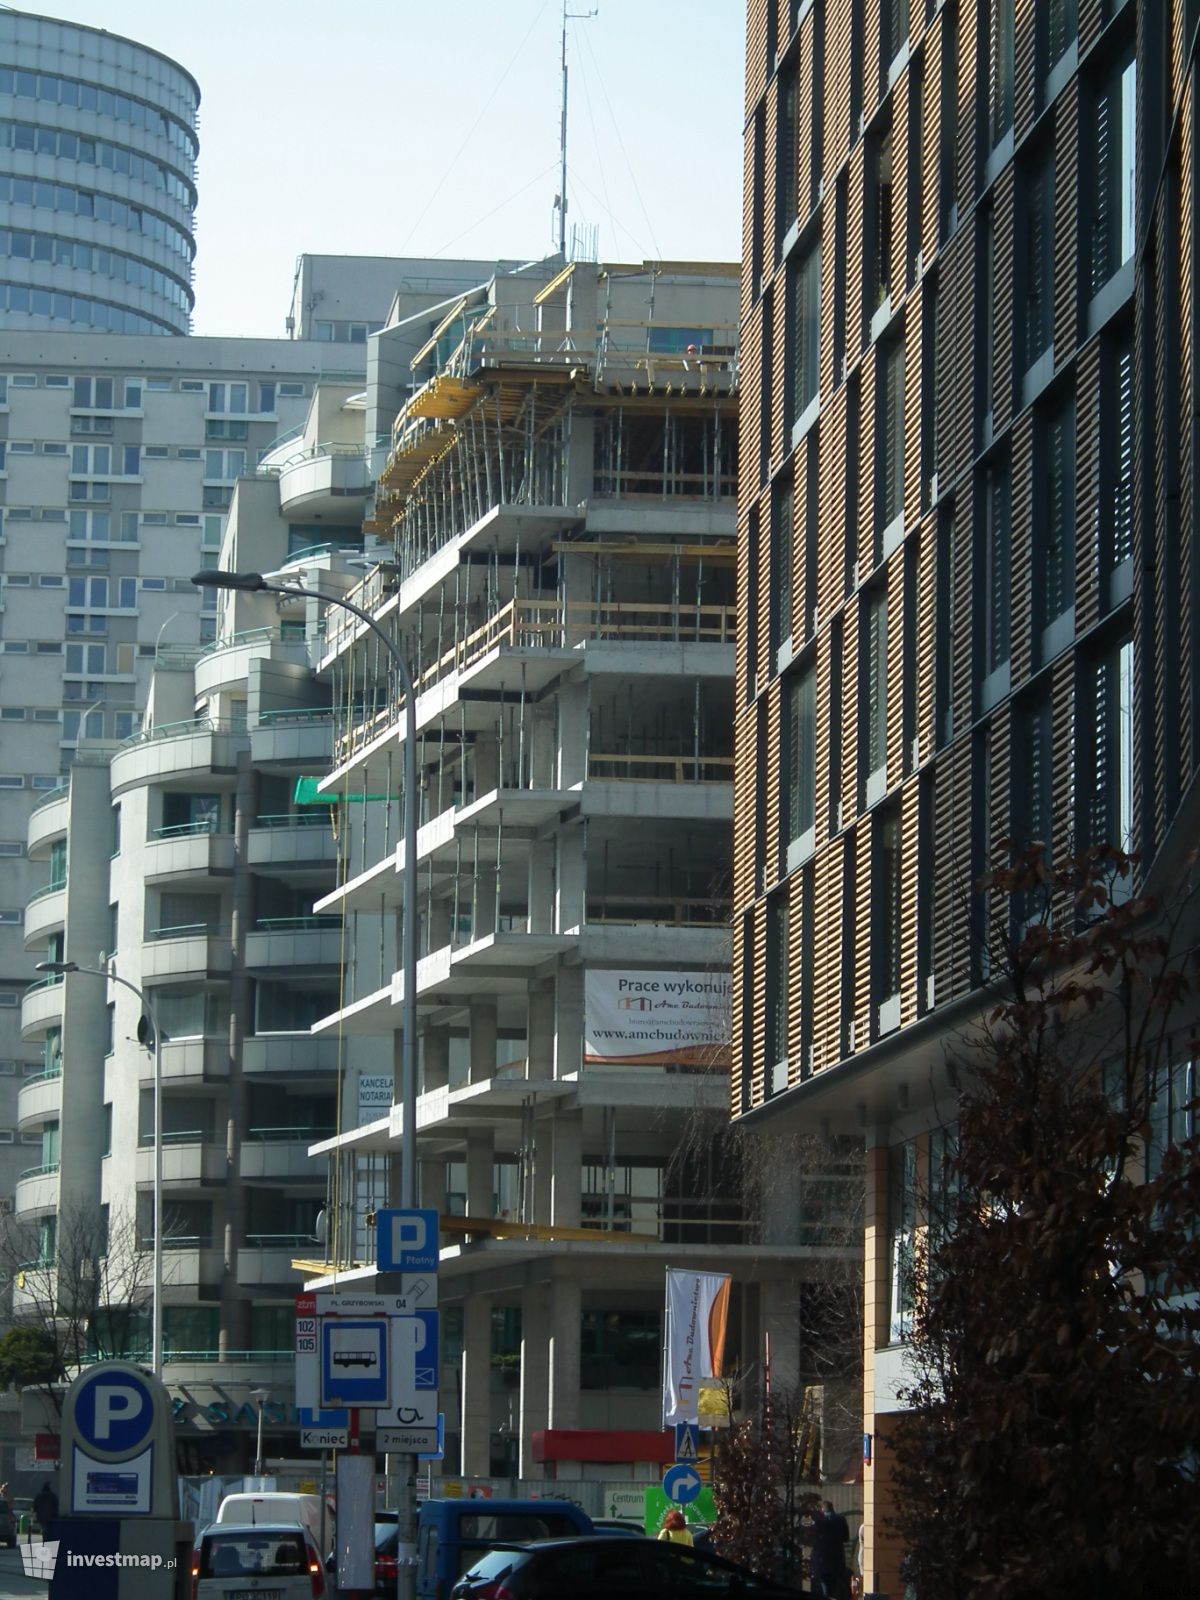 Zdjęcie [Warszawa] Budynek wielorodzinny "Metropolitan Apartments" fot. Pajakus 